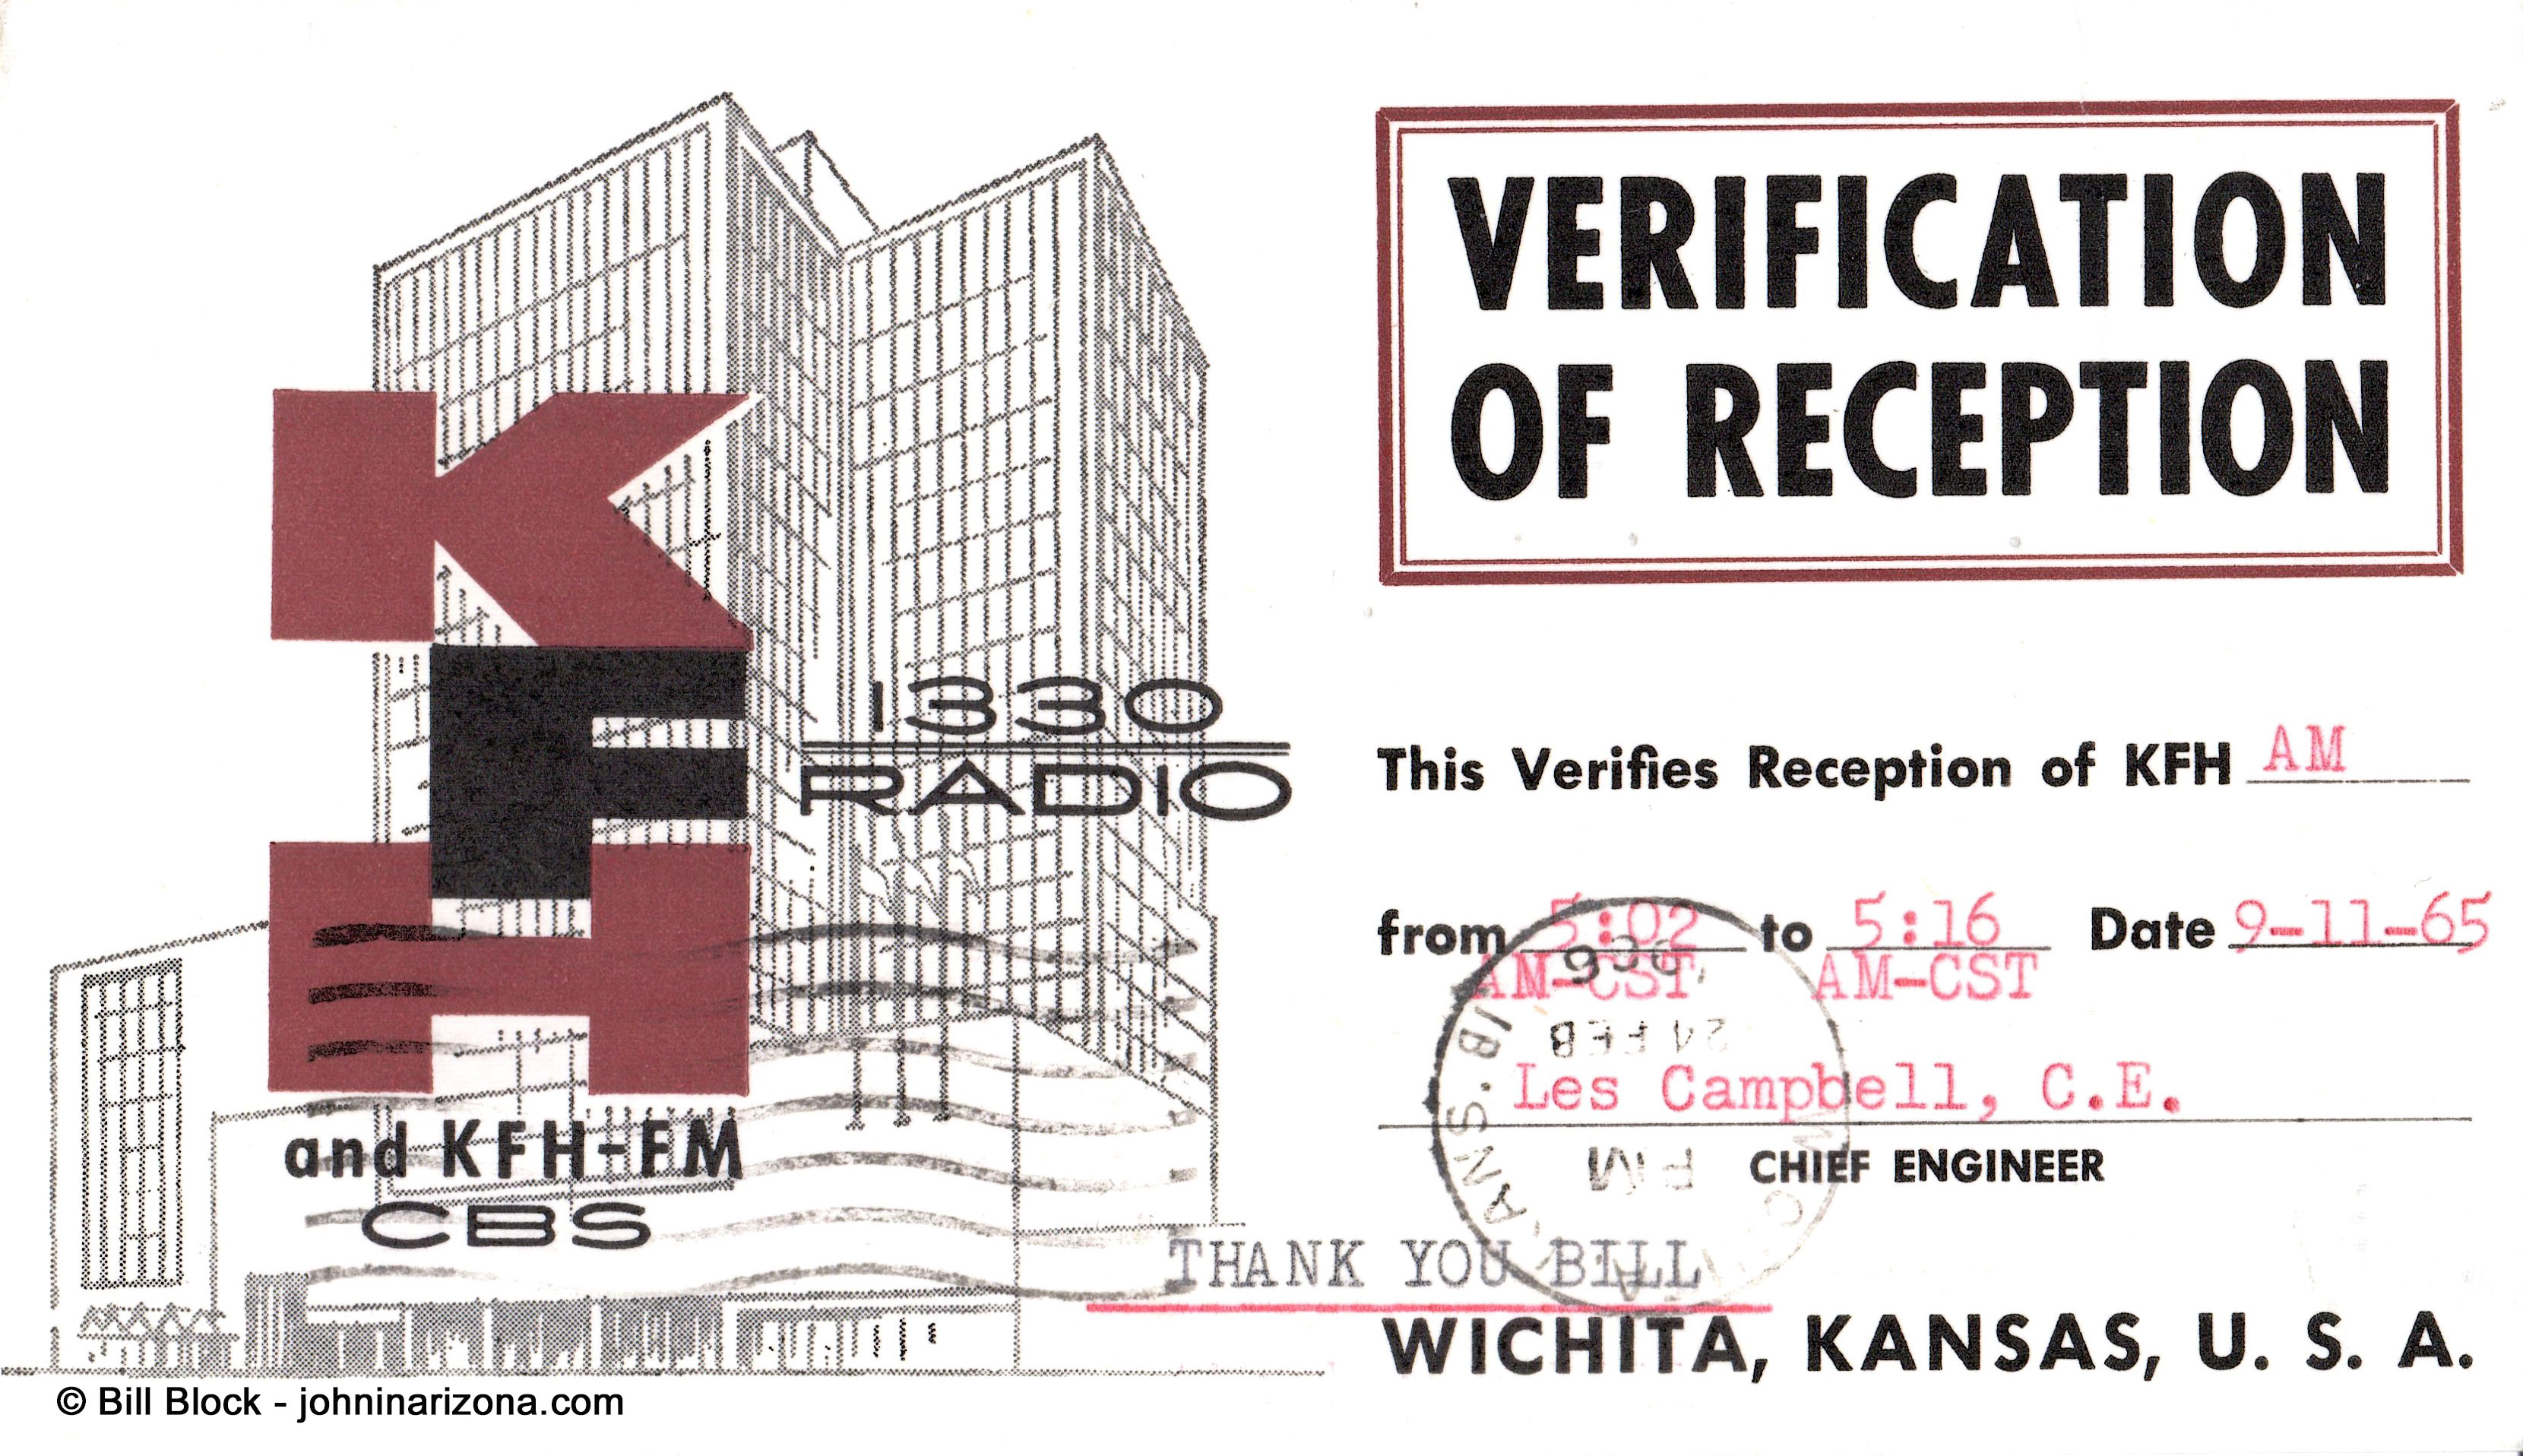 KFH Radio 1330 Wichita, Kansas